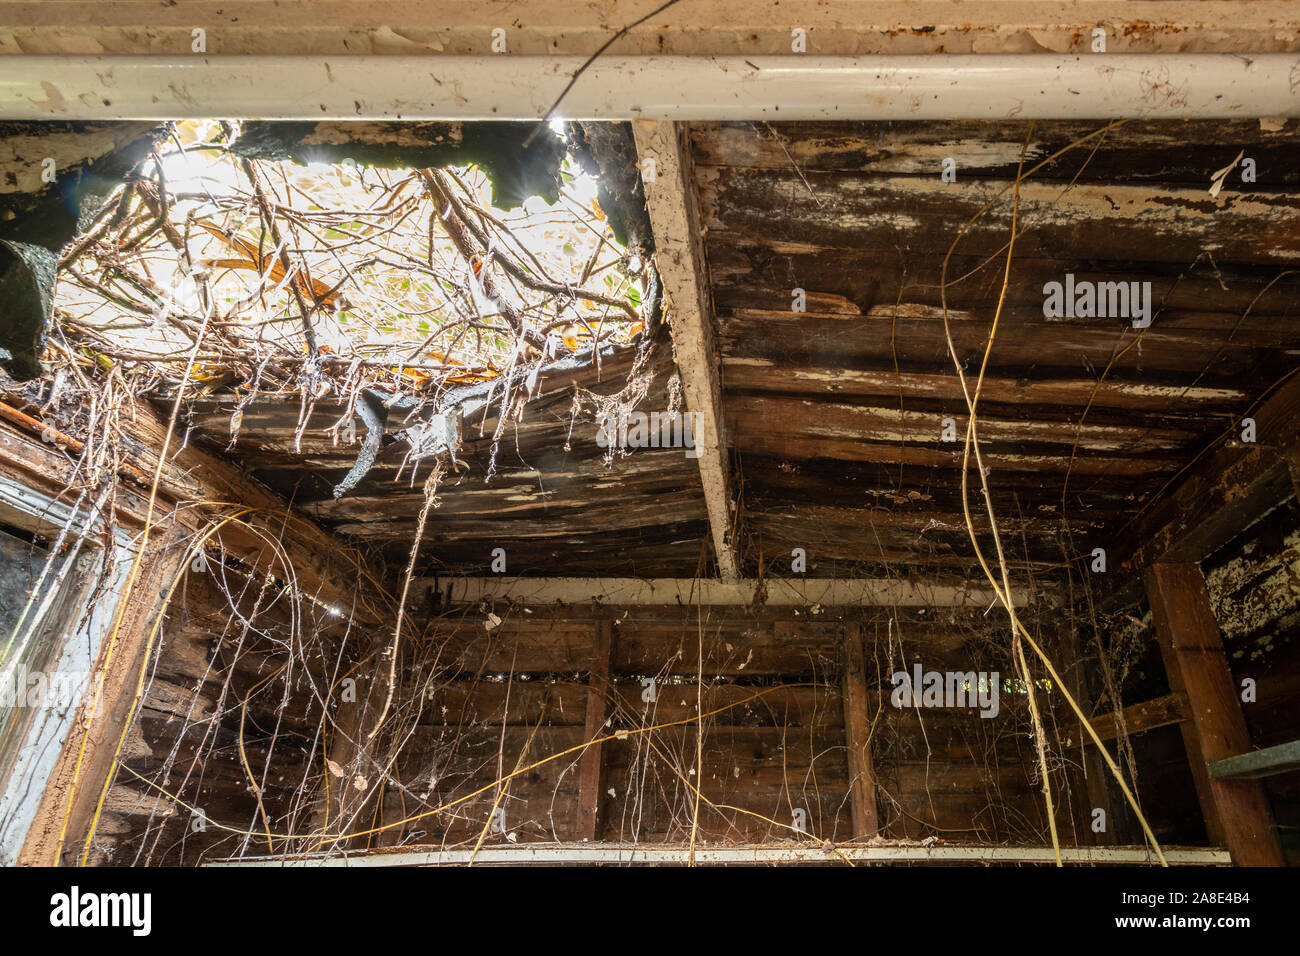 Ancien abri de jardin intérieur avec des planches de bois pourri, les trous dans la toiture et la végétation venant en Banque D'Images